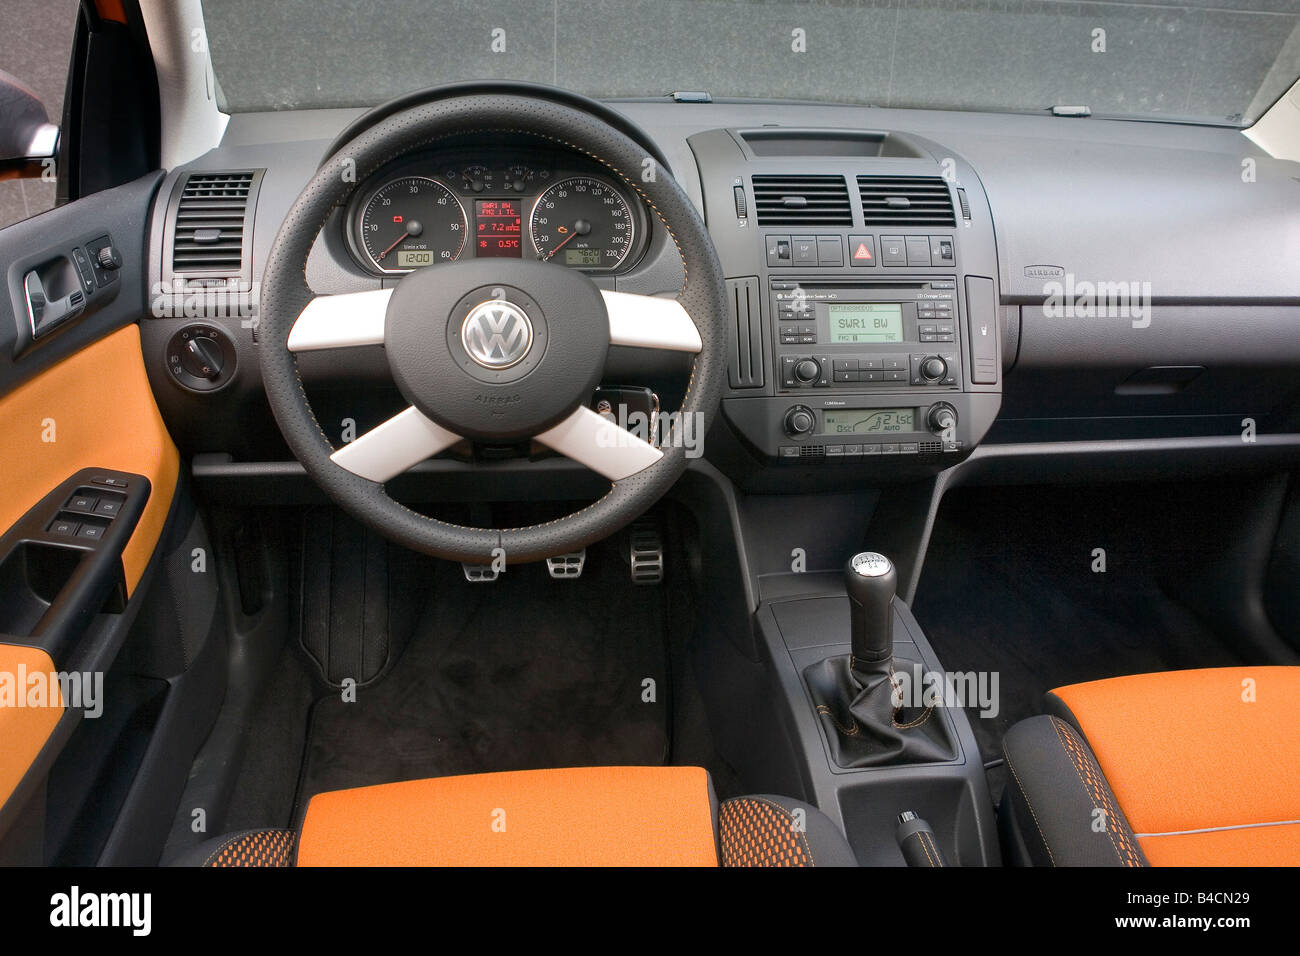 VW Volkswagen Polo trasversale 1.4 TDI, modello anno 2006-, arancione ,  vista interna, vista interna, pozzetto, tecnica/accessorio, accesso Foto  stock - Alamy